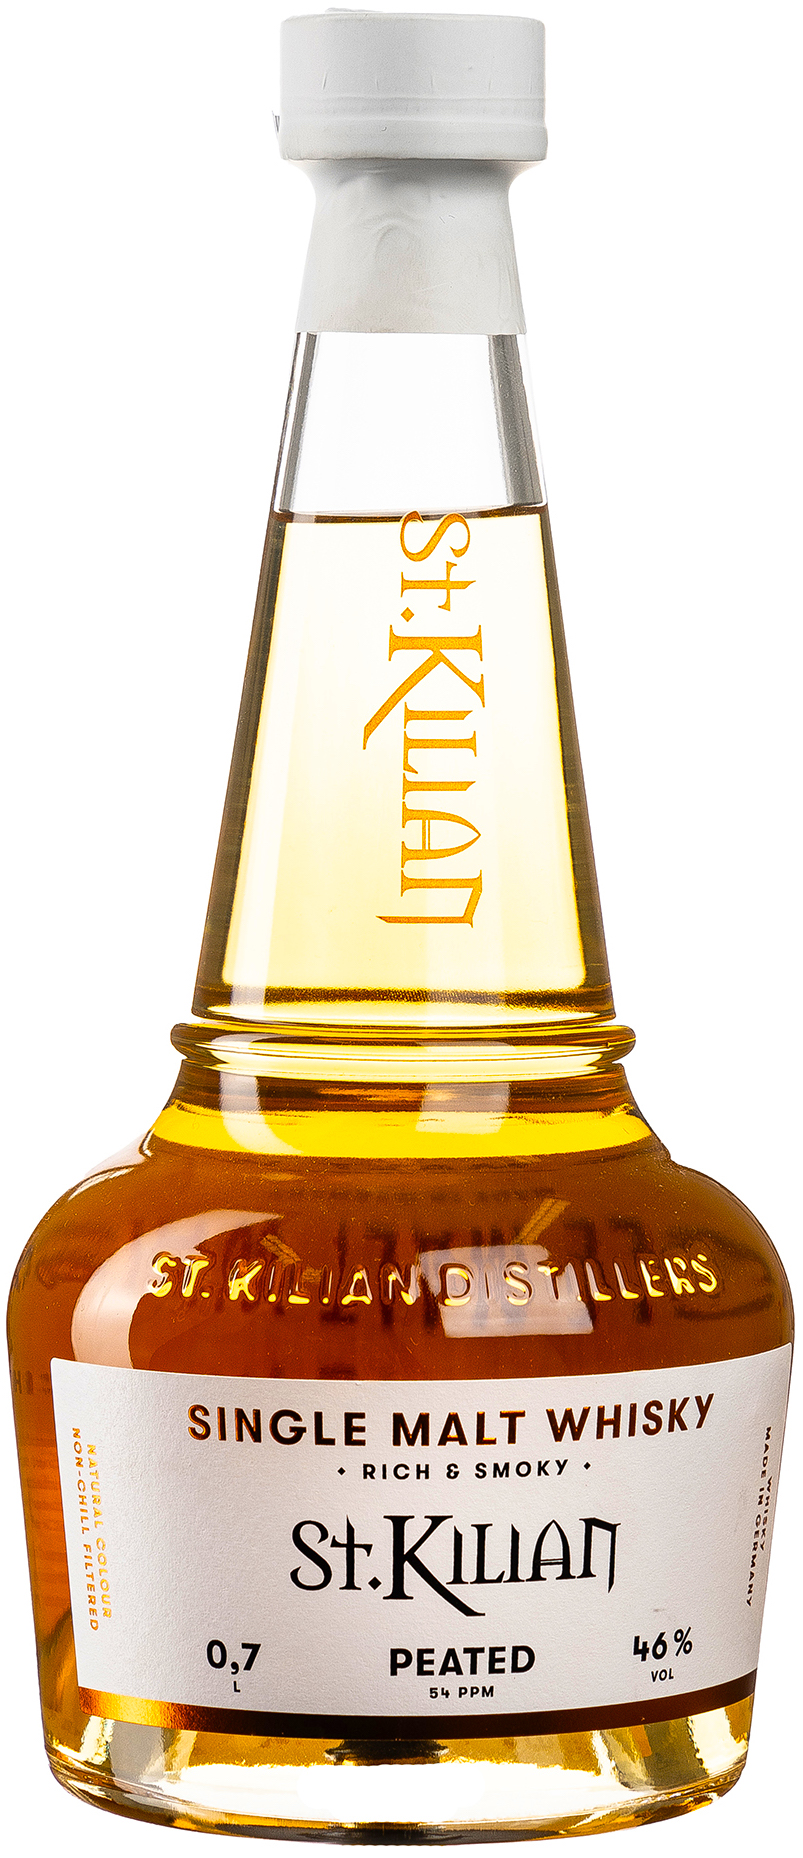 St. Kilian Peated Single Malt Whisky 46% vol. 0,7L